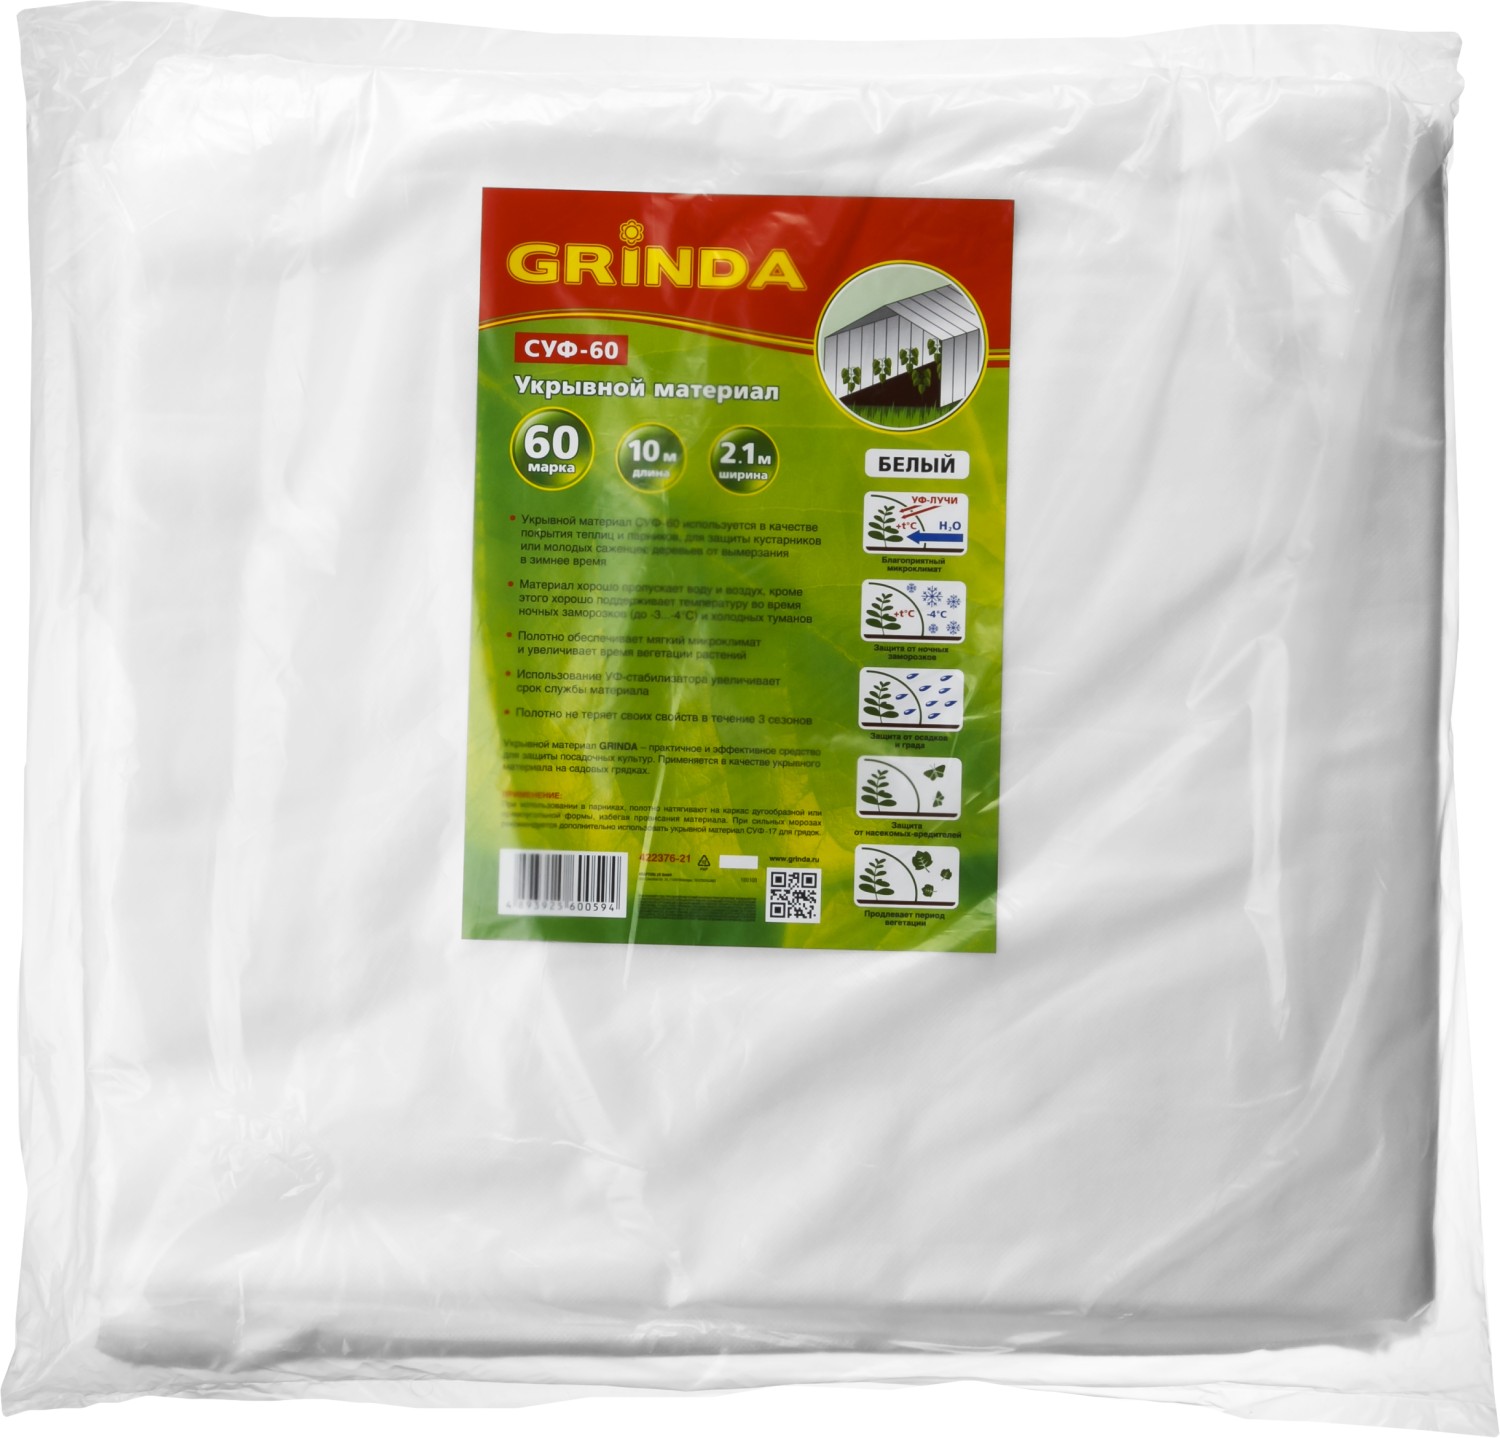 GRINDA СУФ-60, 2.1 x 10 м, белый, укрывной материал (422376-21)